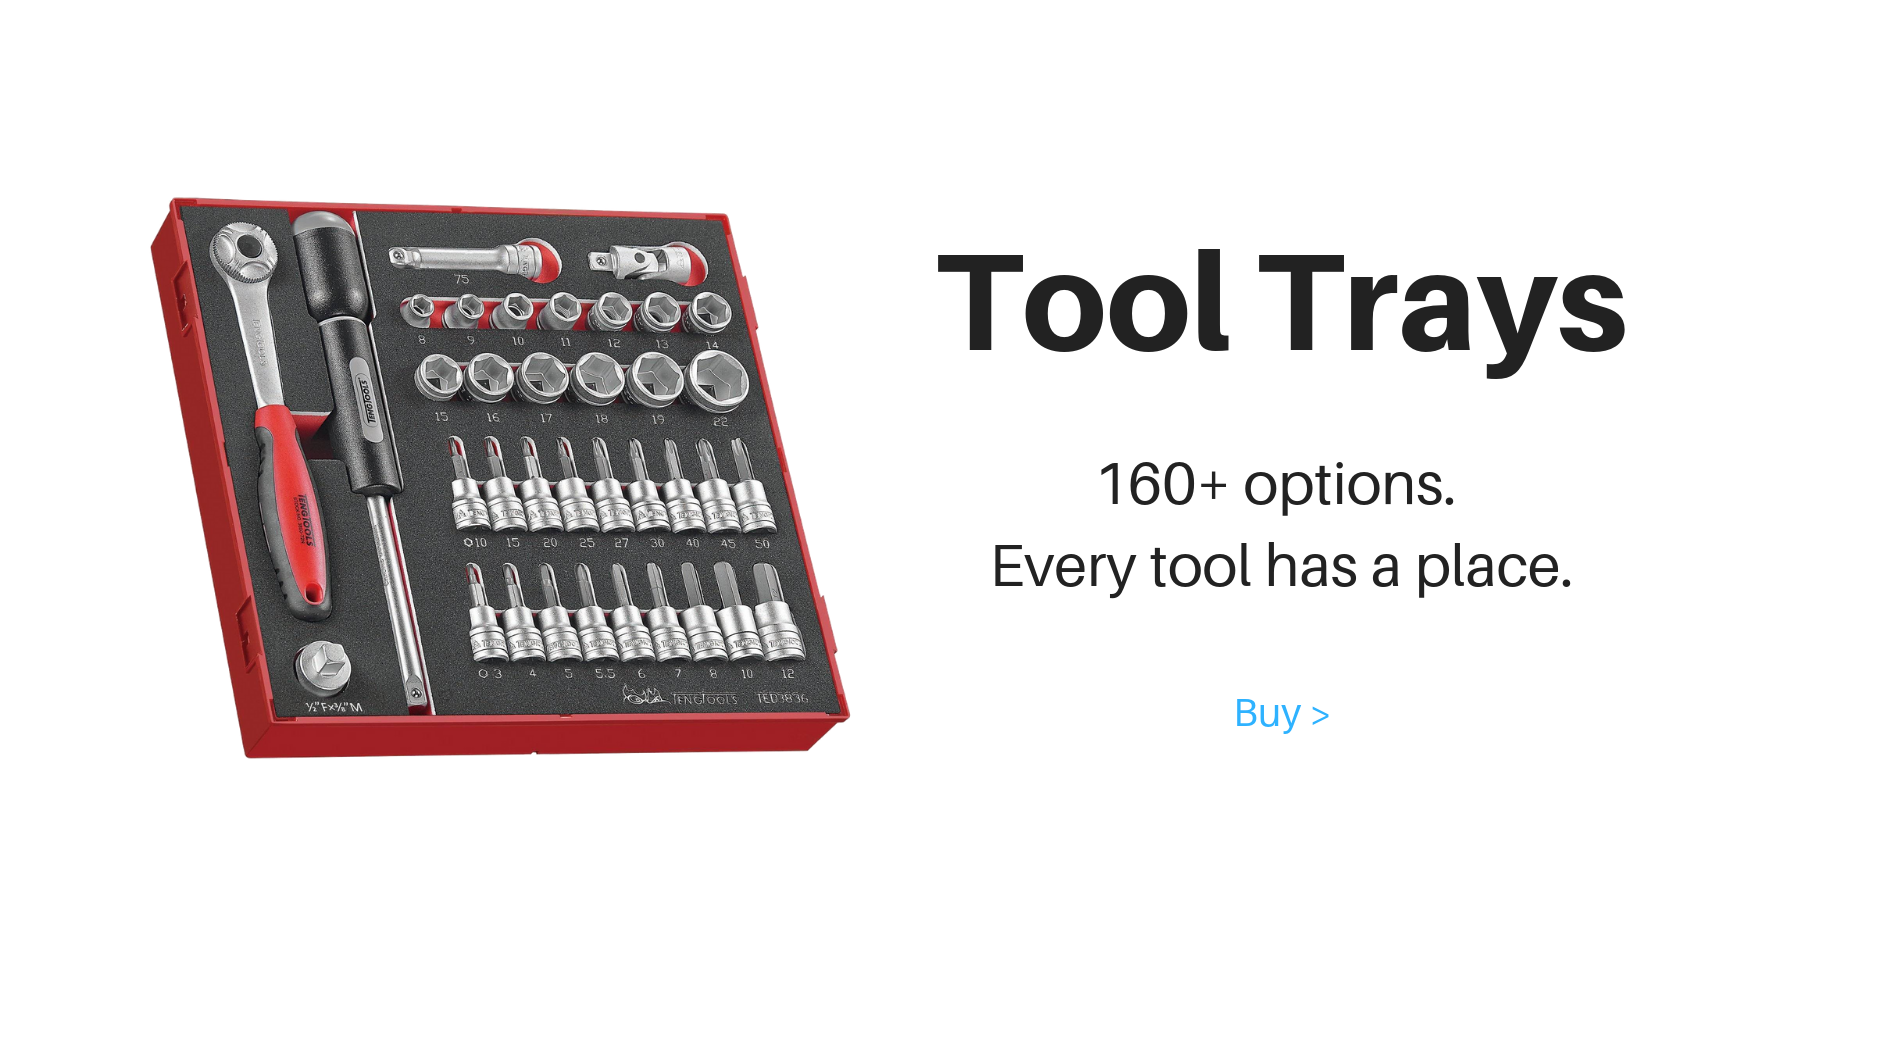 Bandejas de herramientas. Más de 160 opciones. Cada herramienta tiene un lugar.